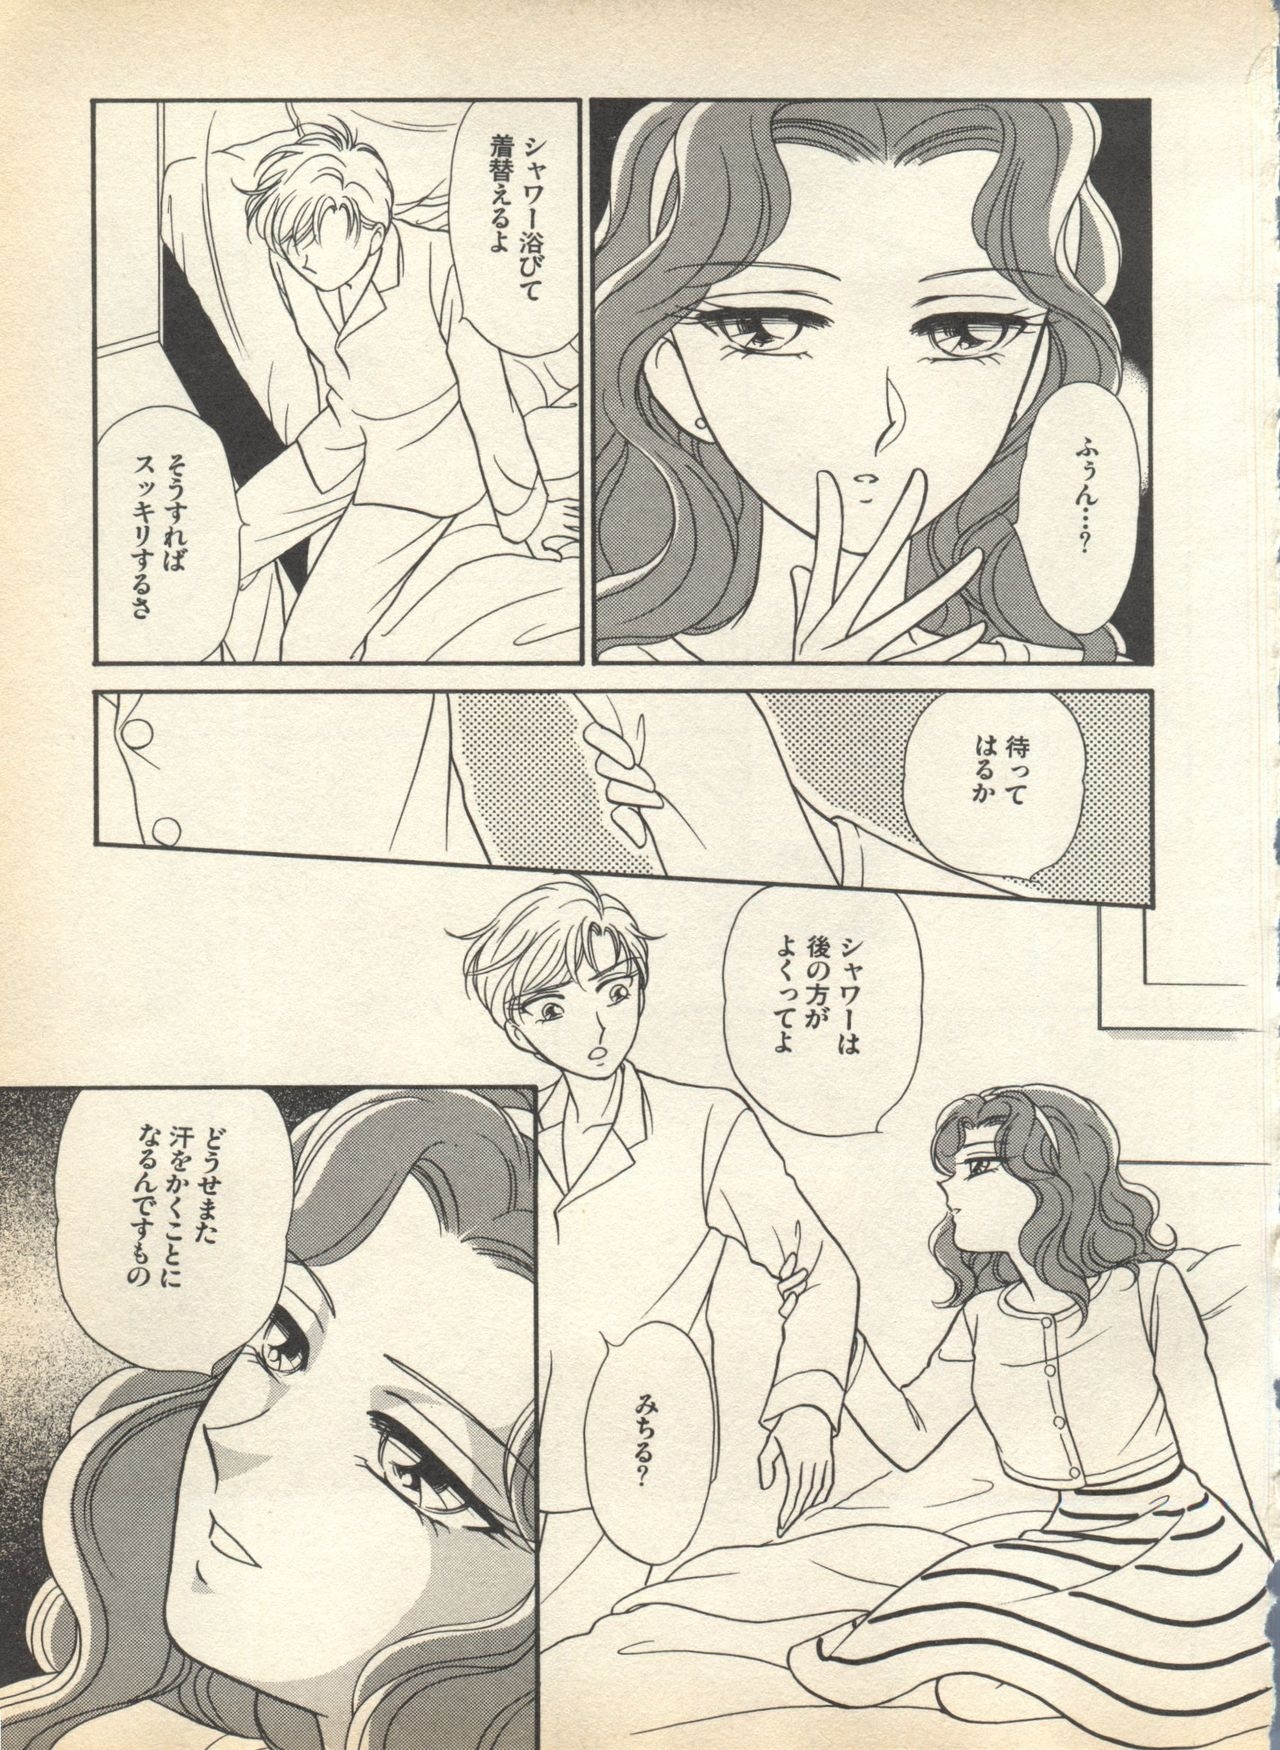 [Anthology] Lunatic Party 7 (Bishoujo Senshi Sailor Moon) 96